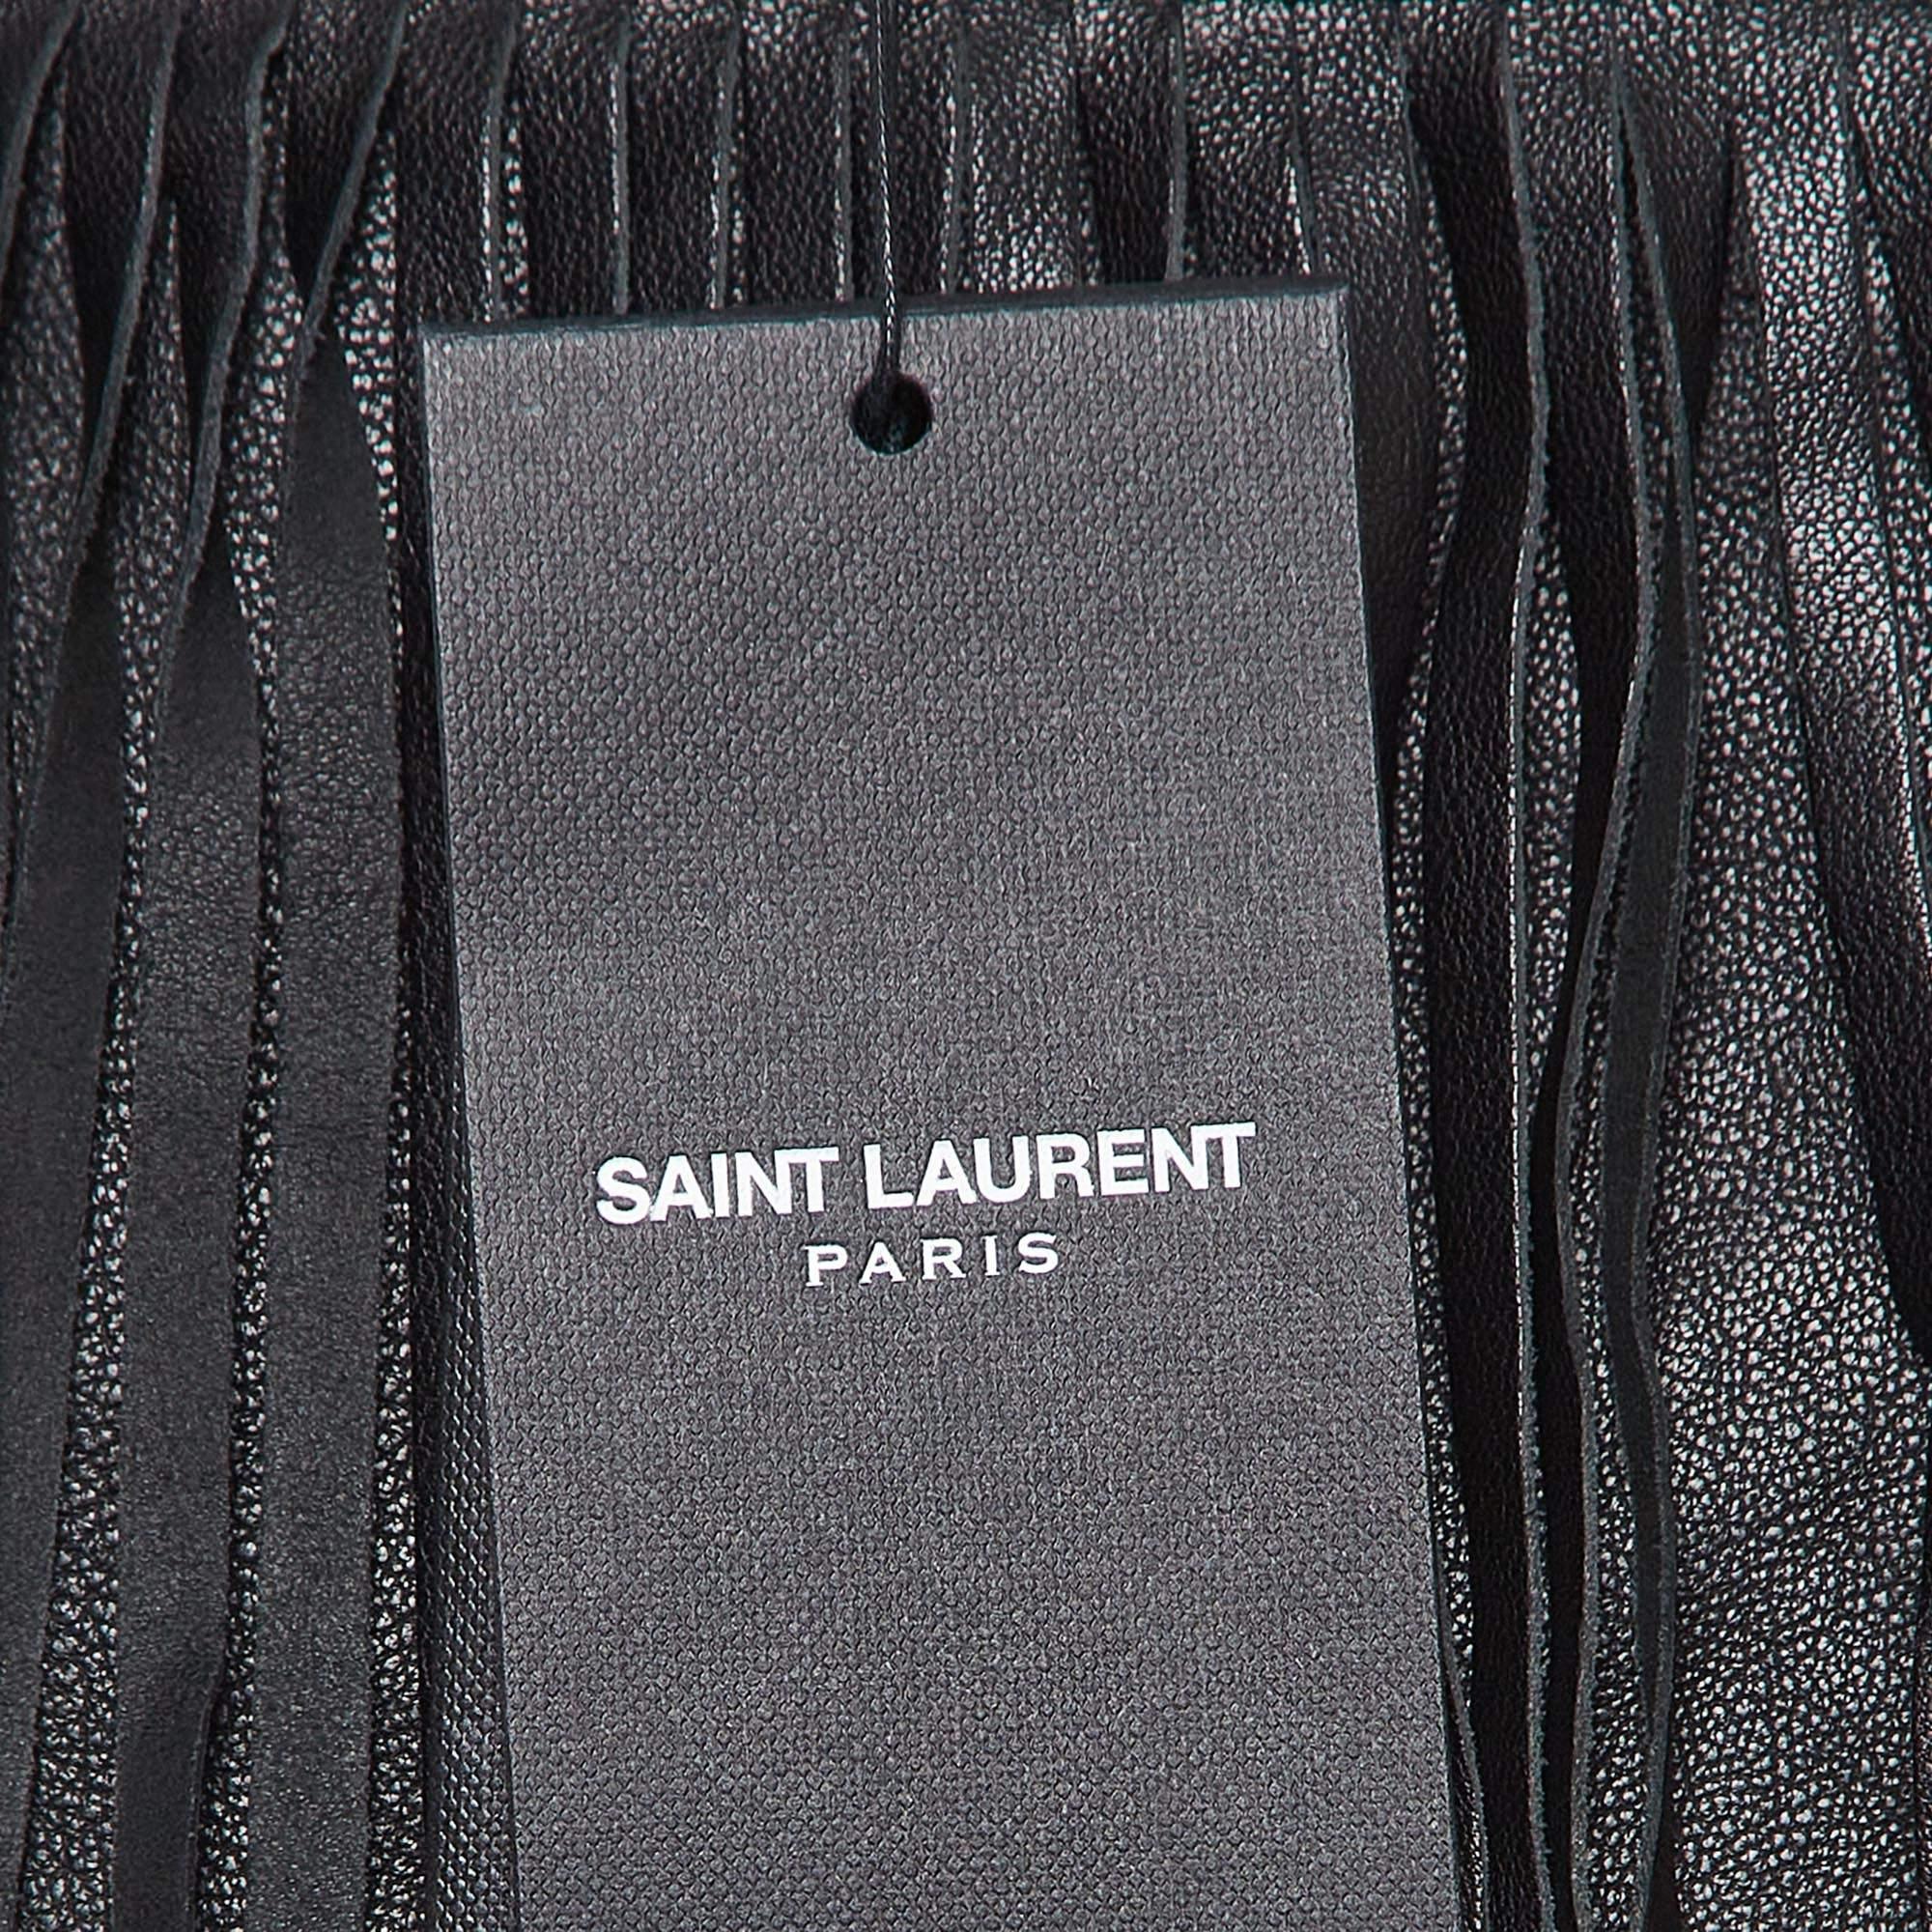 Saint Laurent Black Leather Fringe Detail Mini Skirt M In Excellent Condition For Sale In Dubai, Al Qouz 2